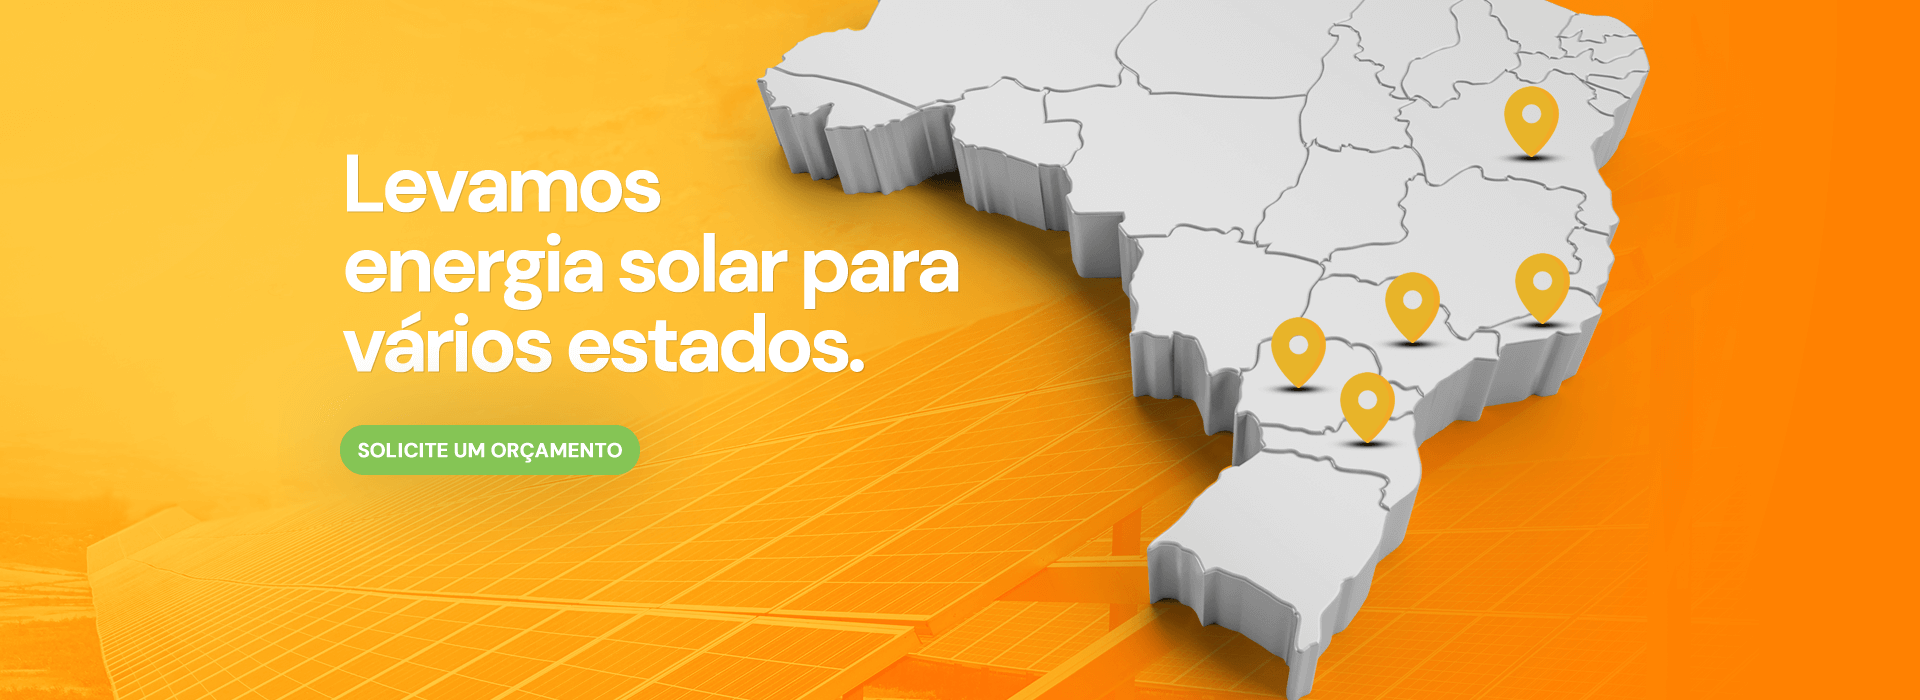 Renova Green Energia Solar em Curitiba